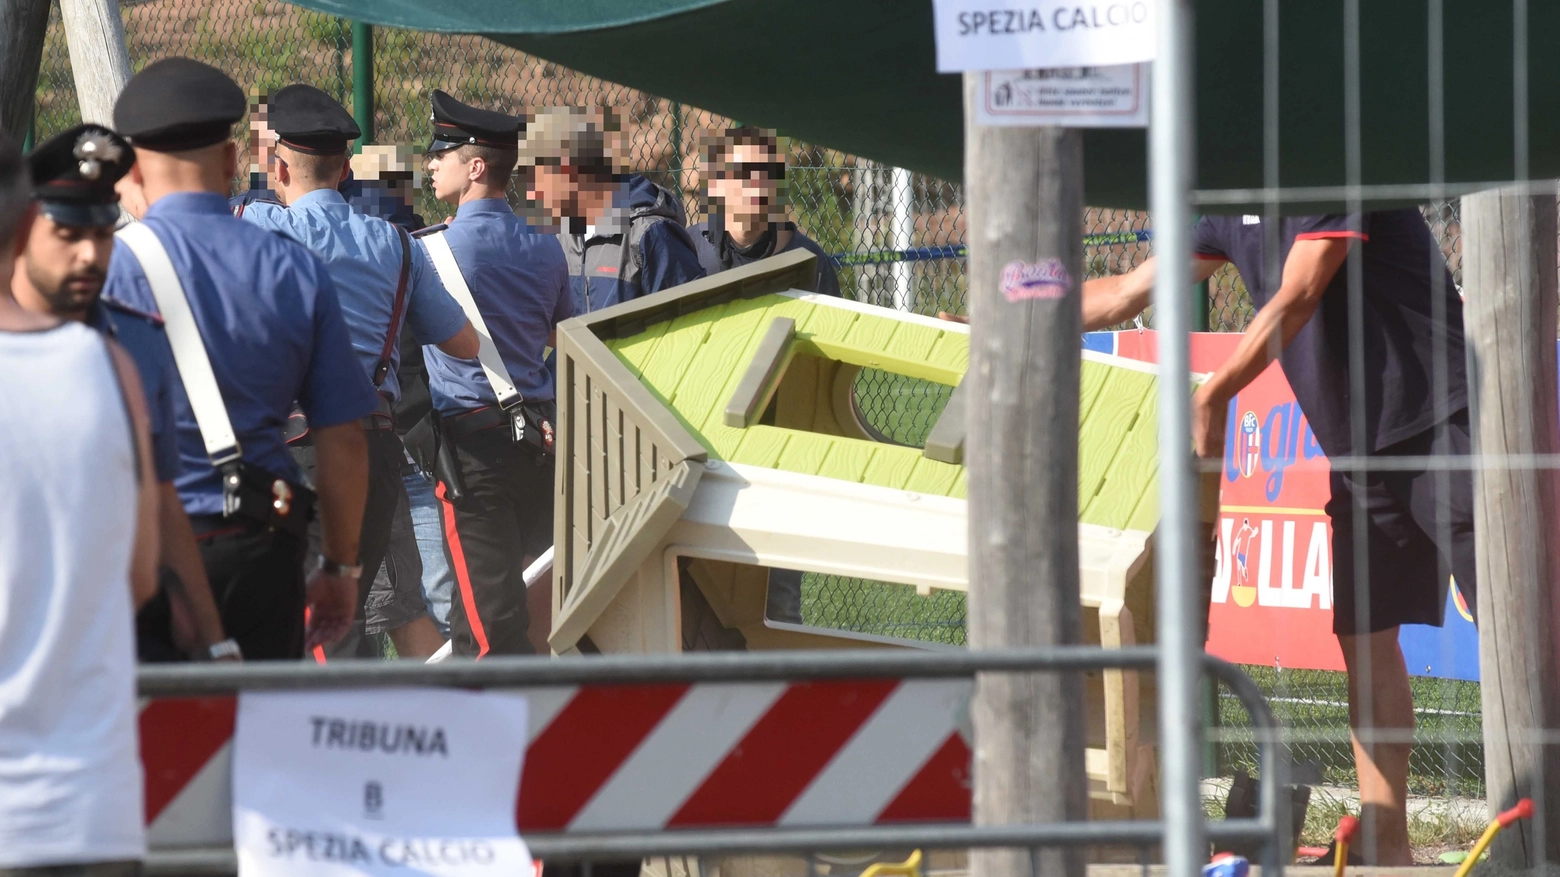 Scontri, la polizia sugli spalti durante Bologna-Spezia (FotoSchicchi)